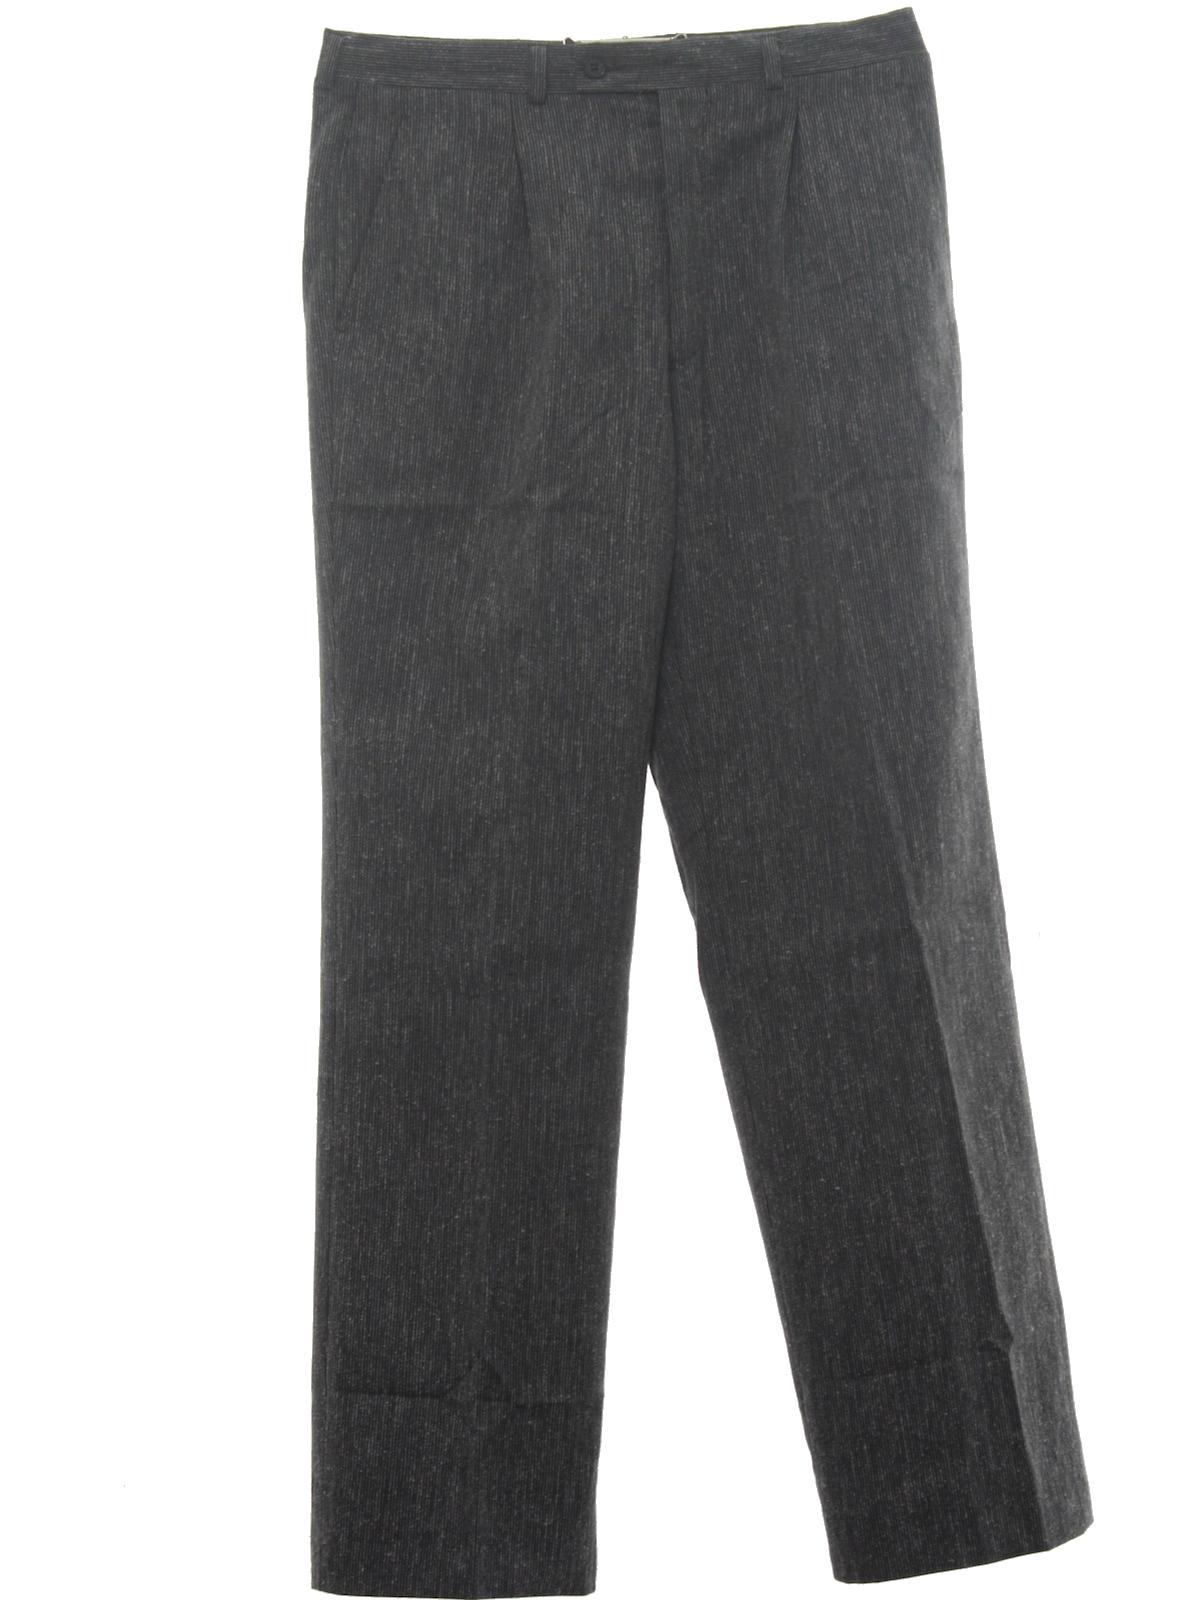 1980's Pants (Missing Label): 80s -Missing Label- Mens light grey ...